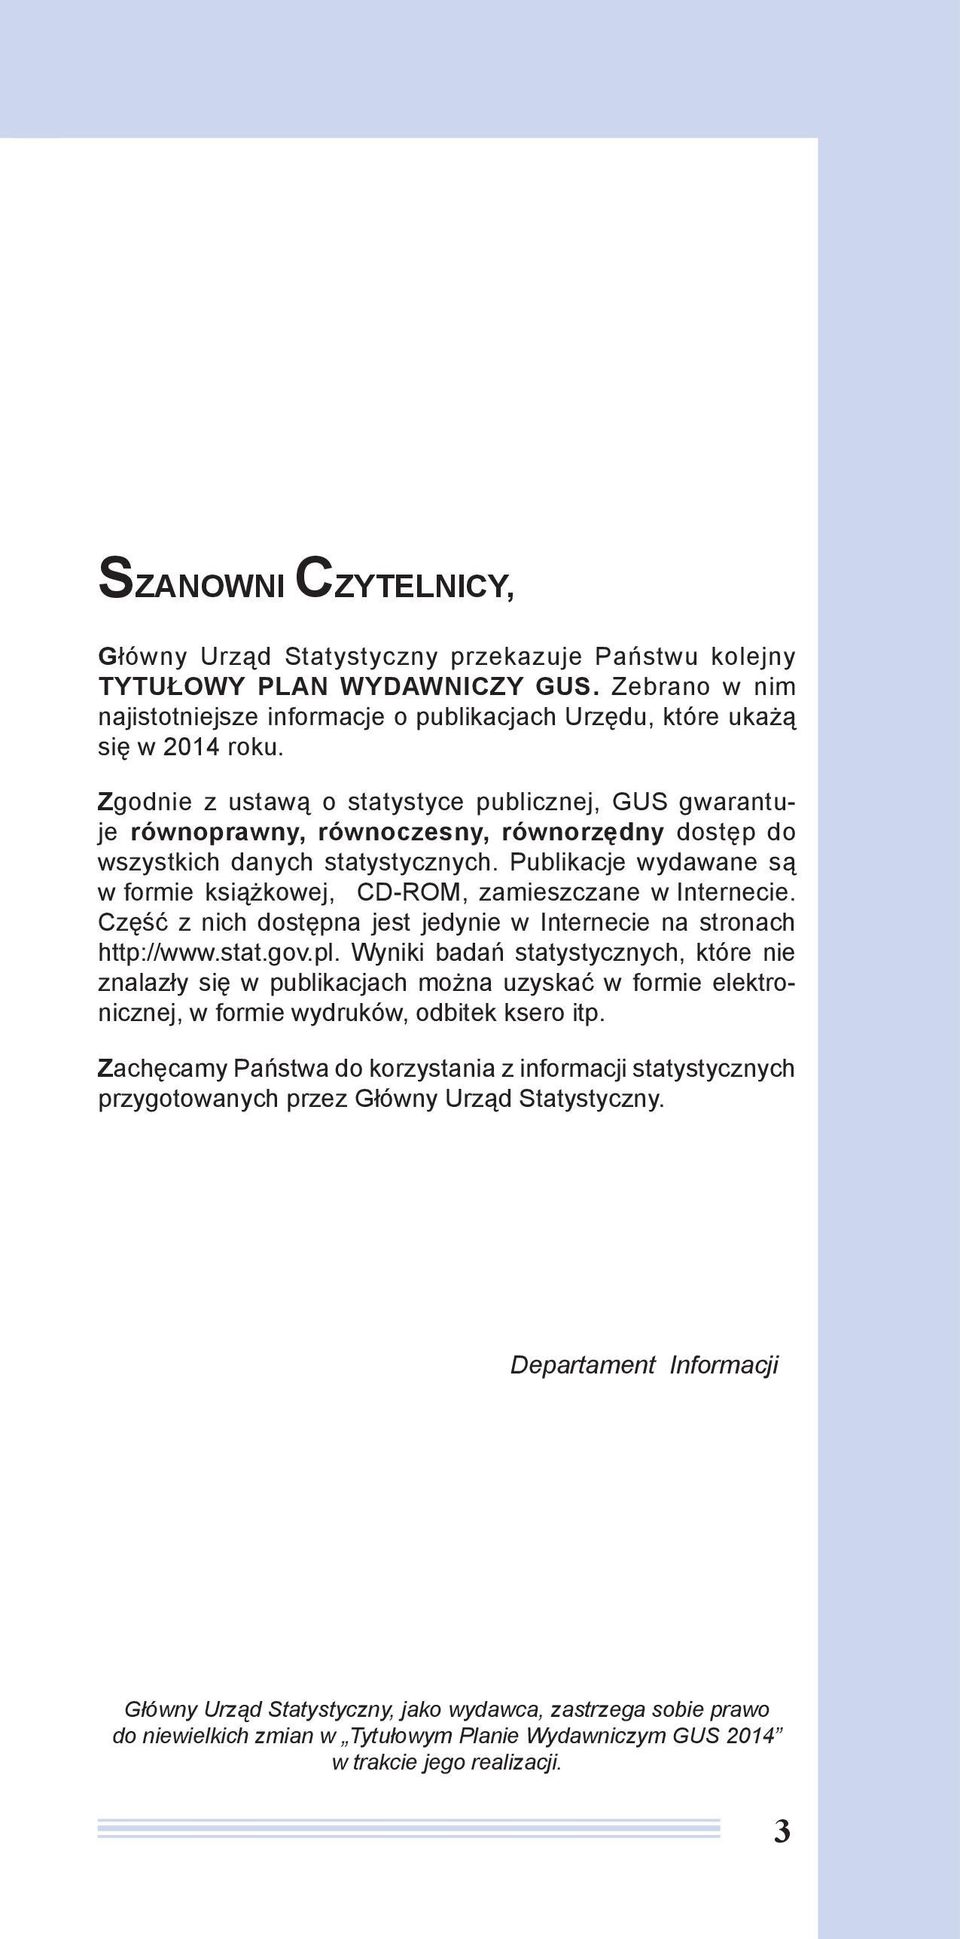 Publikacje wydawane są w formie książkowej, CD-ROM, zamieszczane w Internecie. Część z nich dostępna jest jedynie w Internecie na stronach http://www.stat.gov.pl.